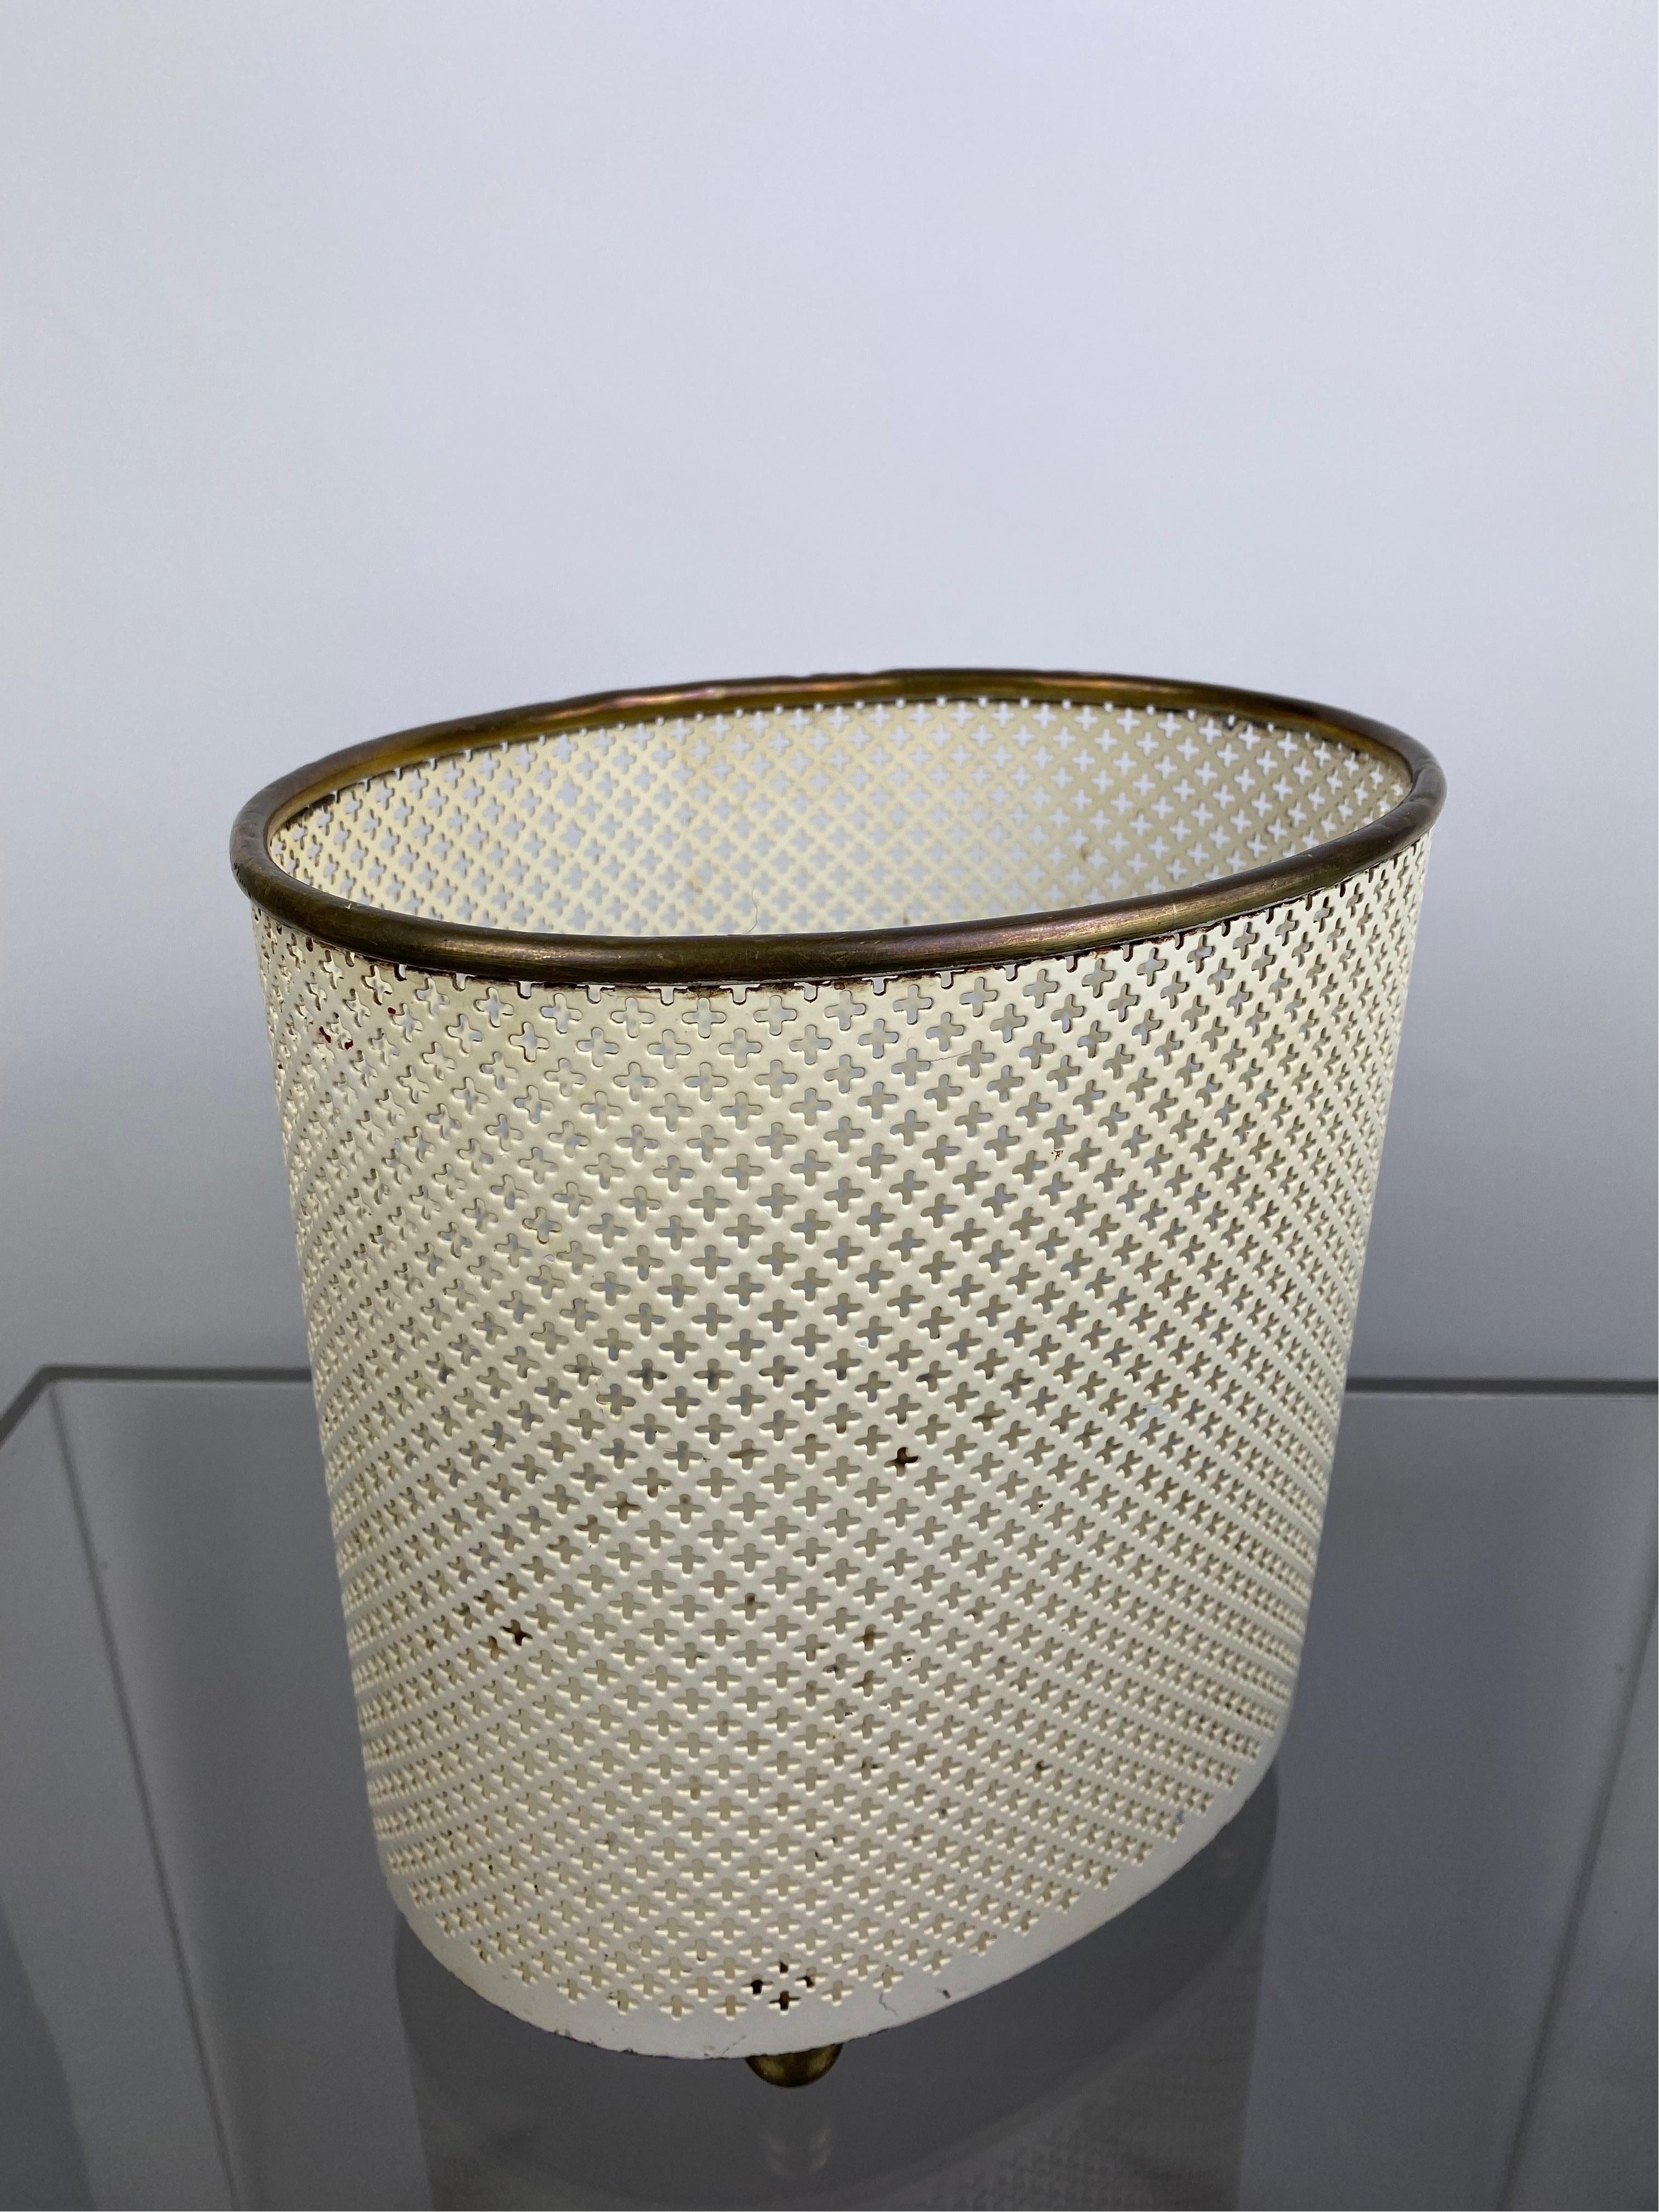 Vereinigte Werkstätten  Mategot Style  Paper Waste Bin , Basket or jardiniere, 50s In Good Condition For Sale In Halle, DE